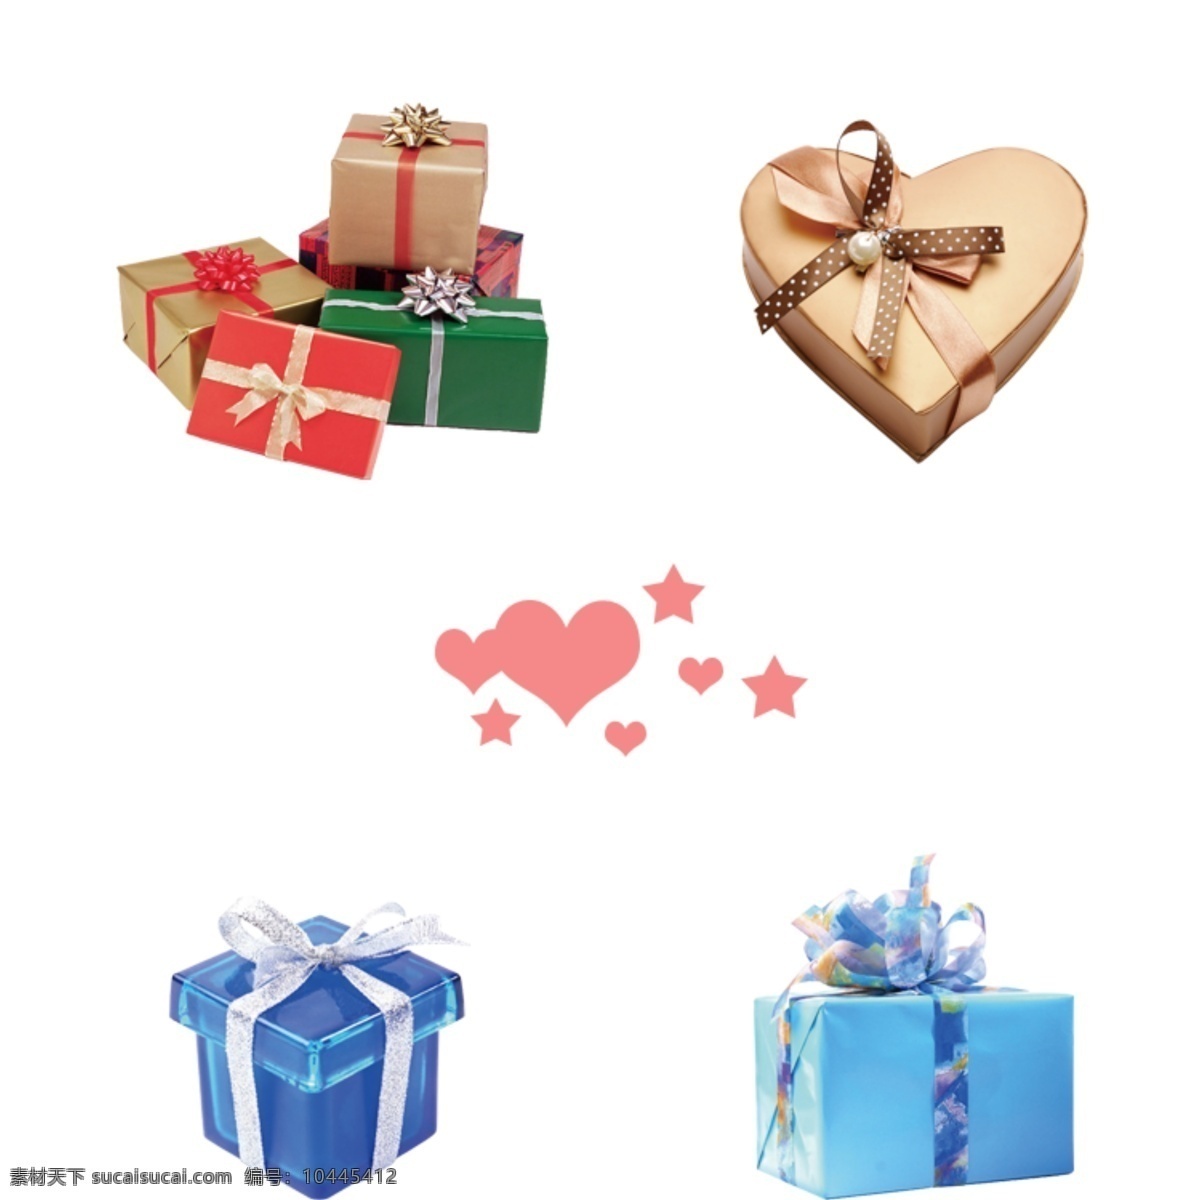 礼品盒素材 爱心素材 星星素材 五角星 礼品盒 分层